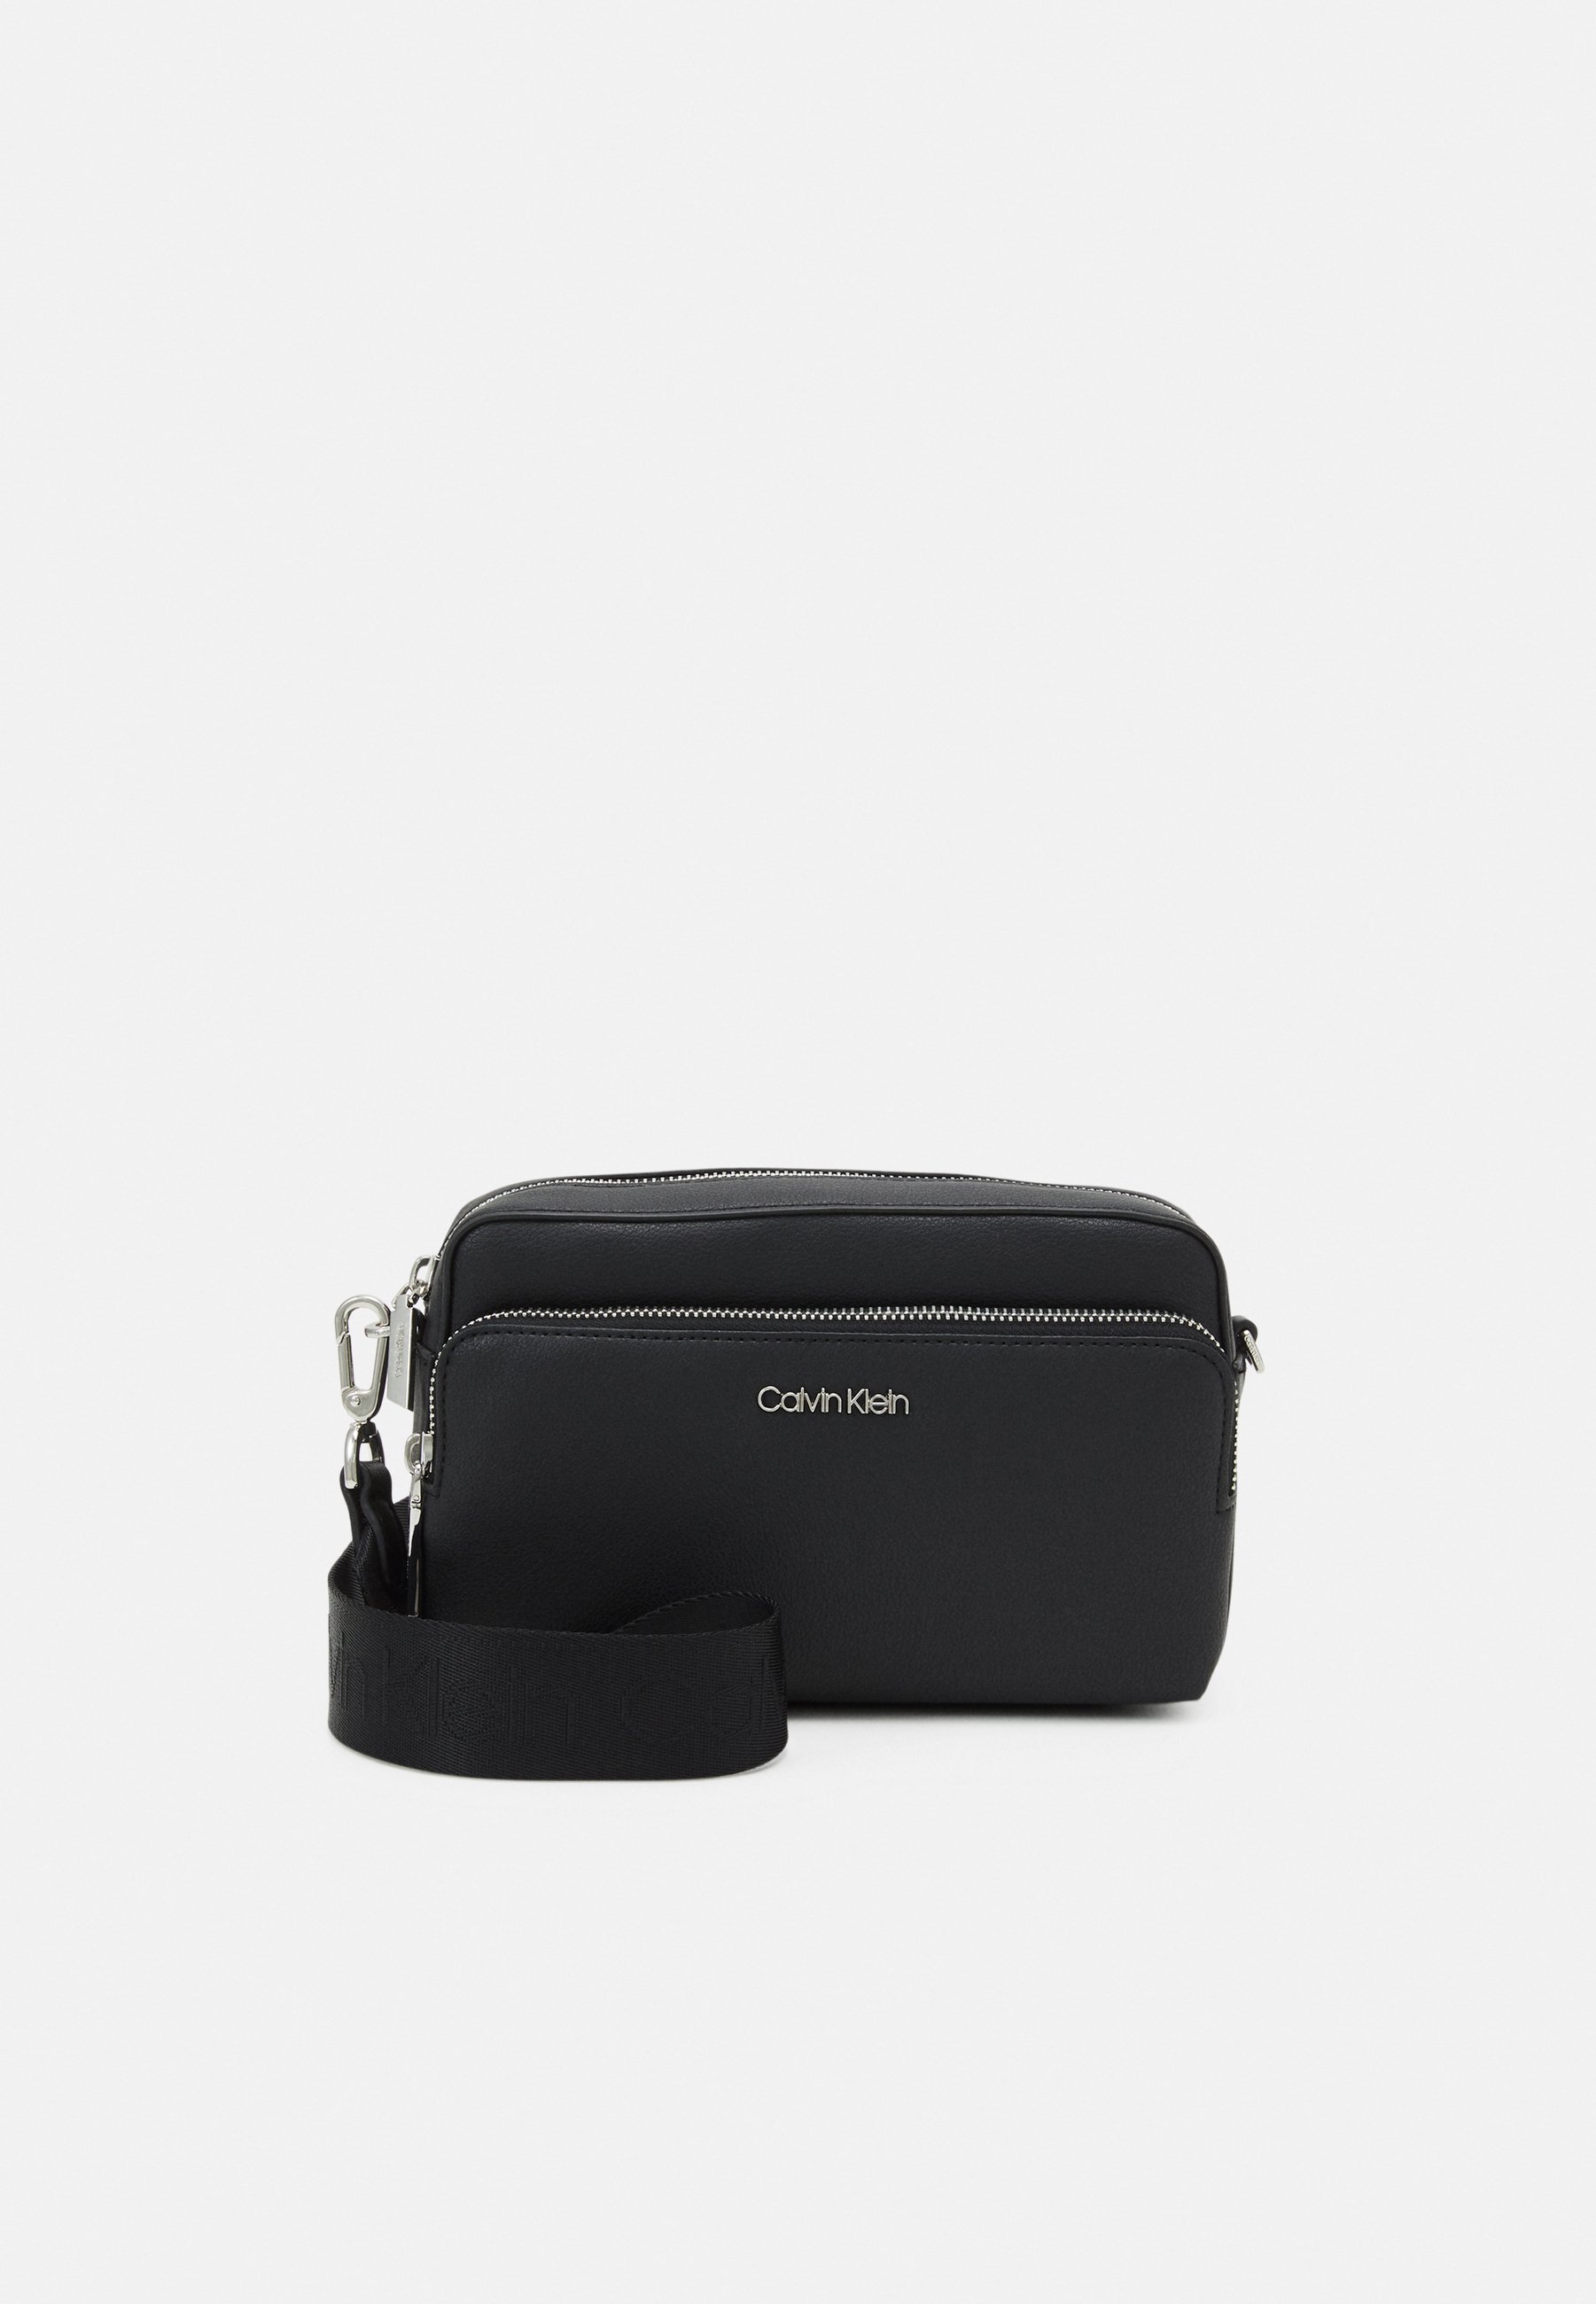 calvin klein camera bag